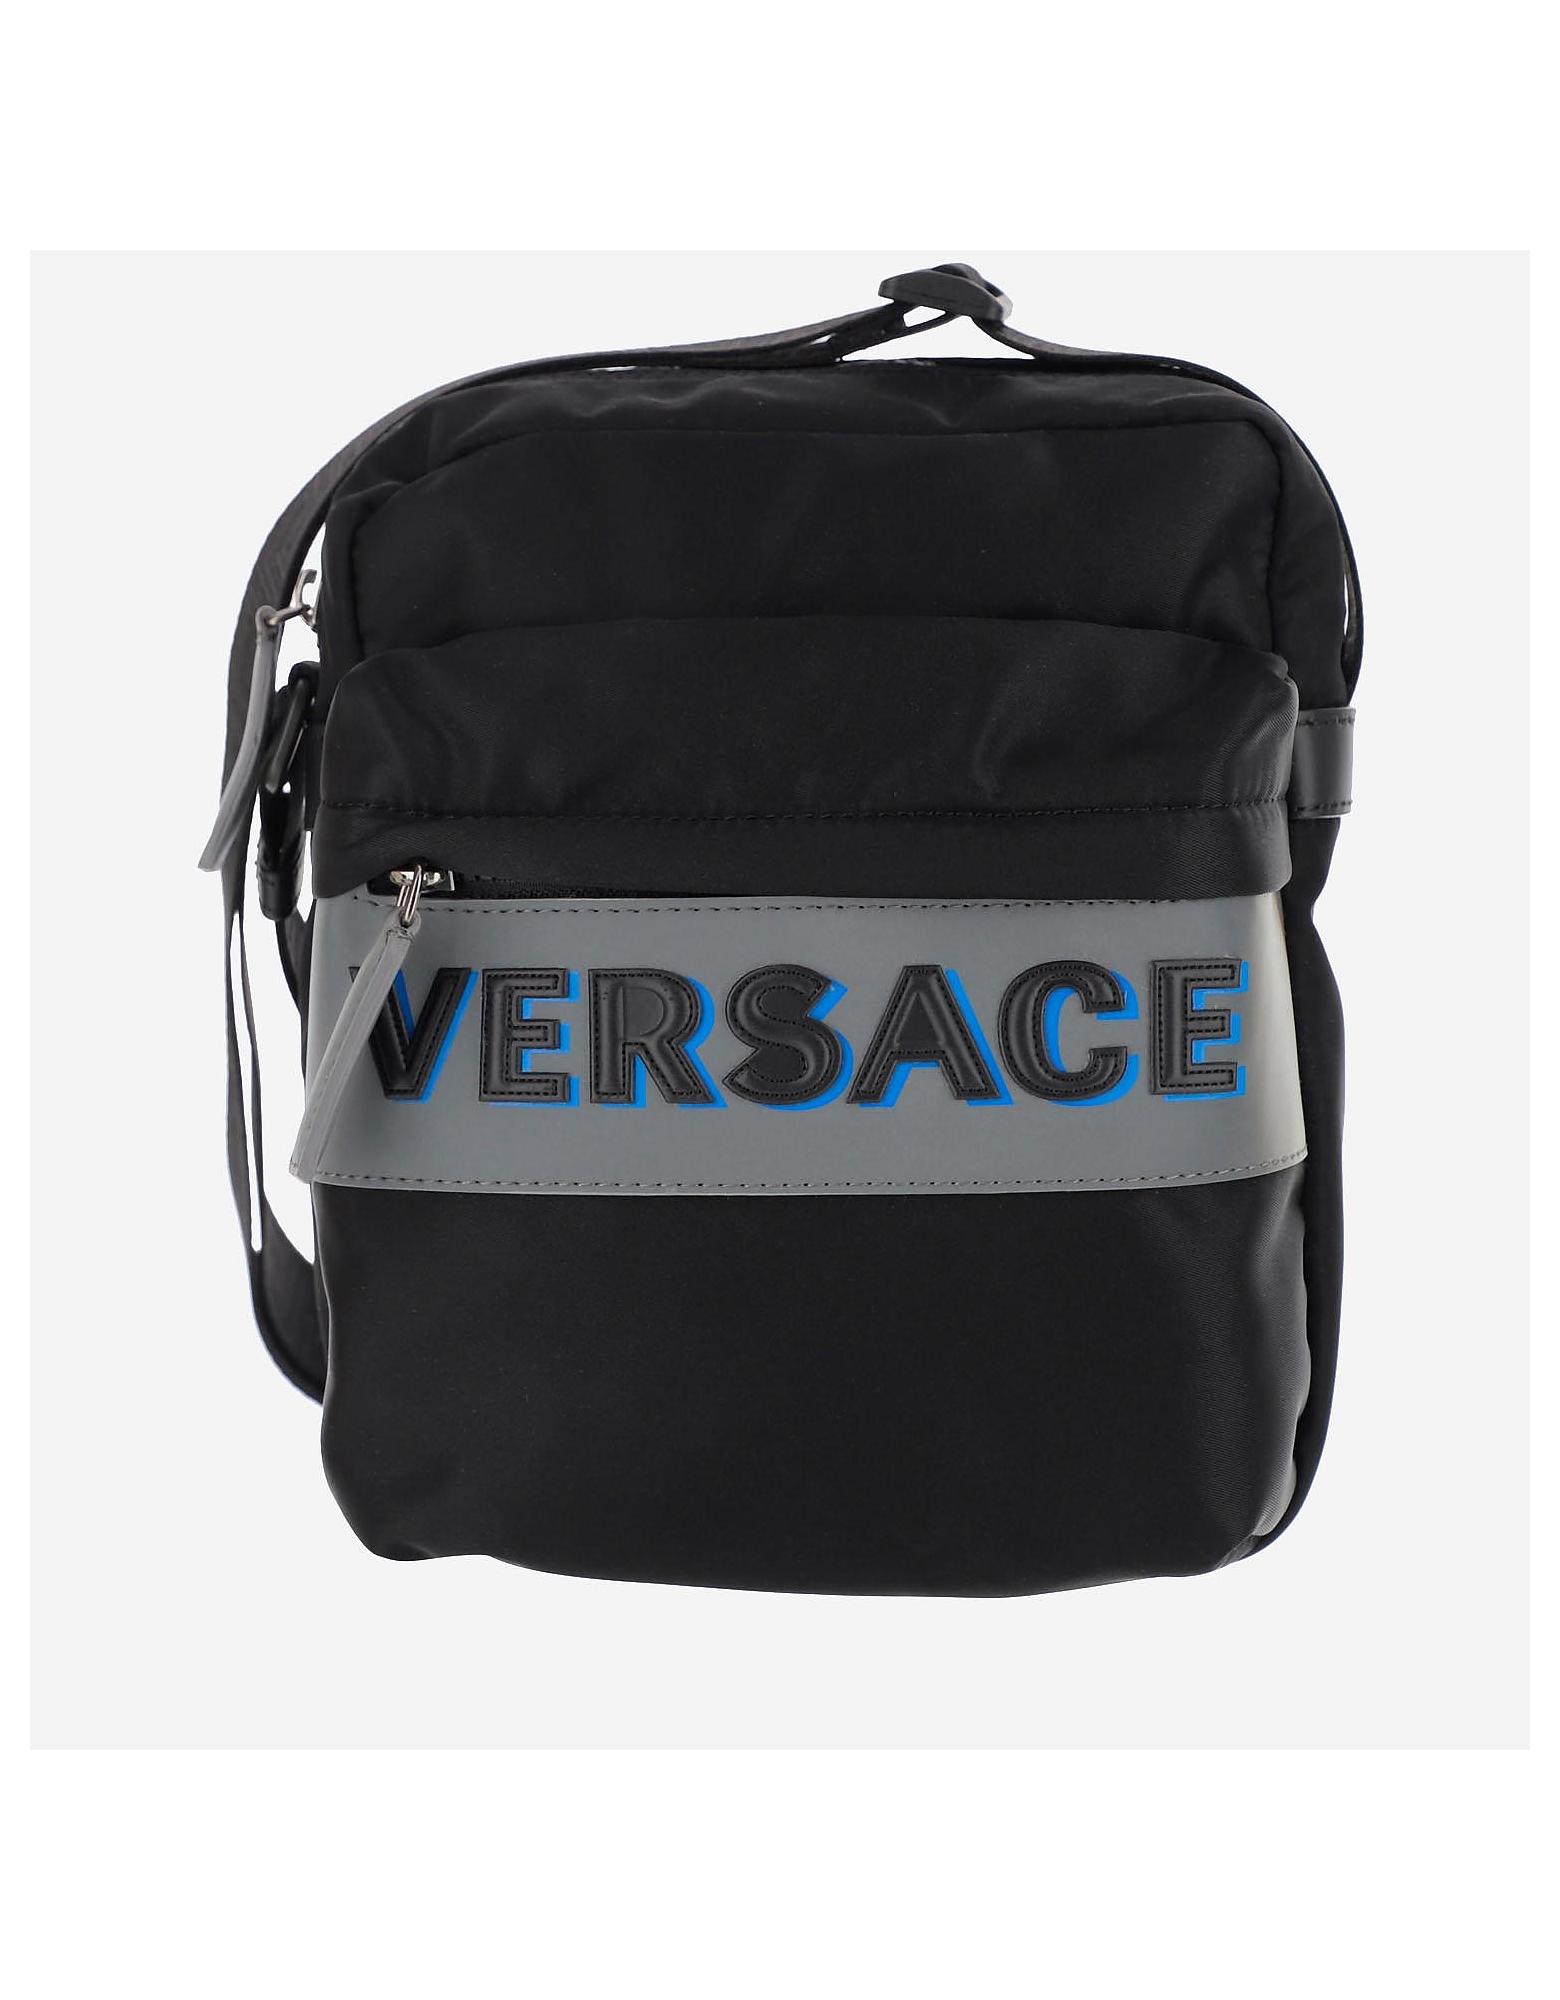 Versace Nylon Messenger Bag in Black for Men - Lyst